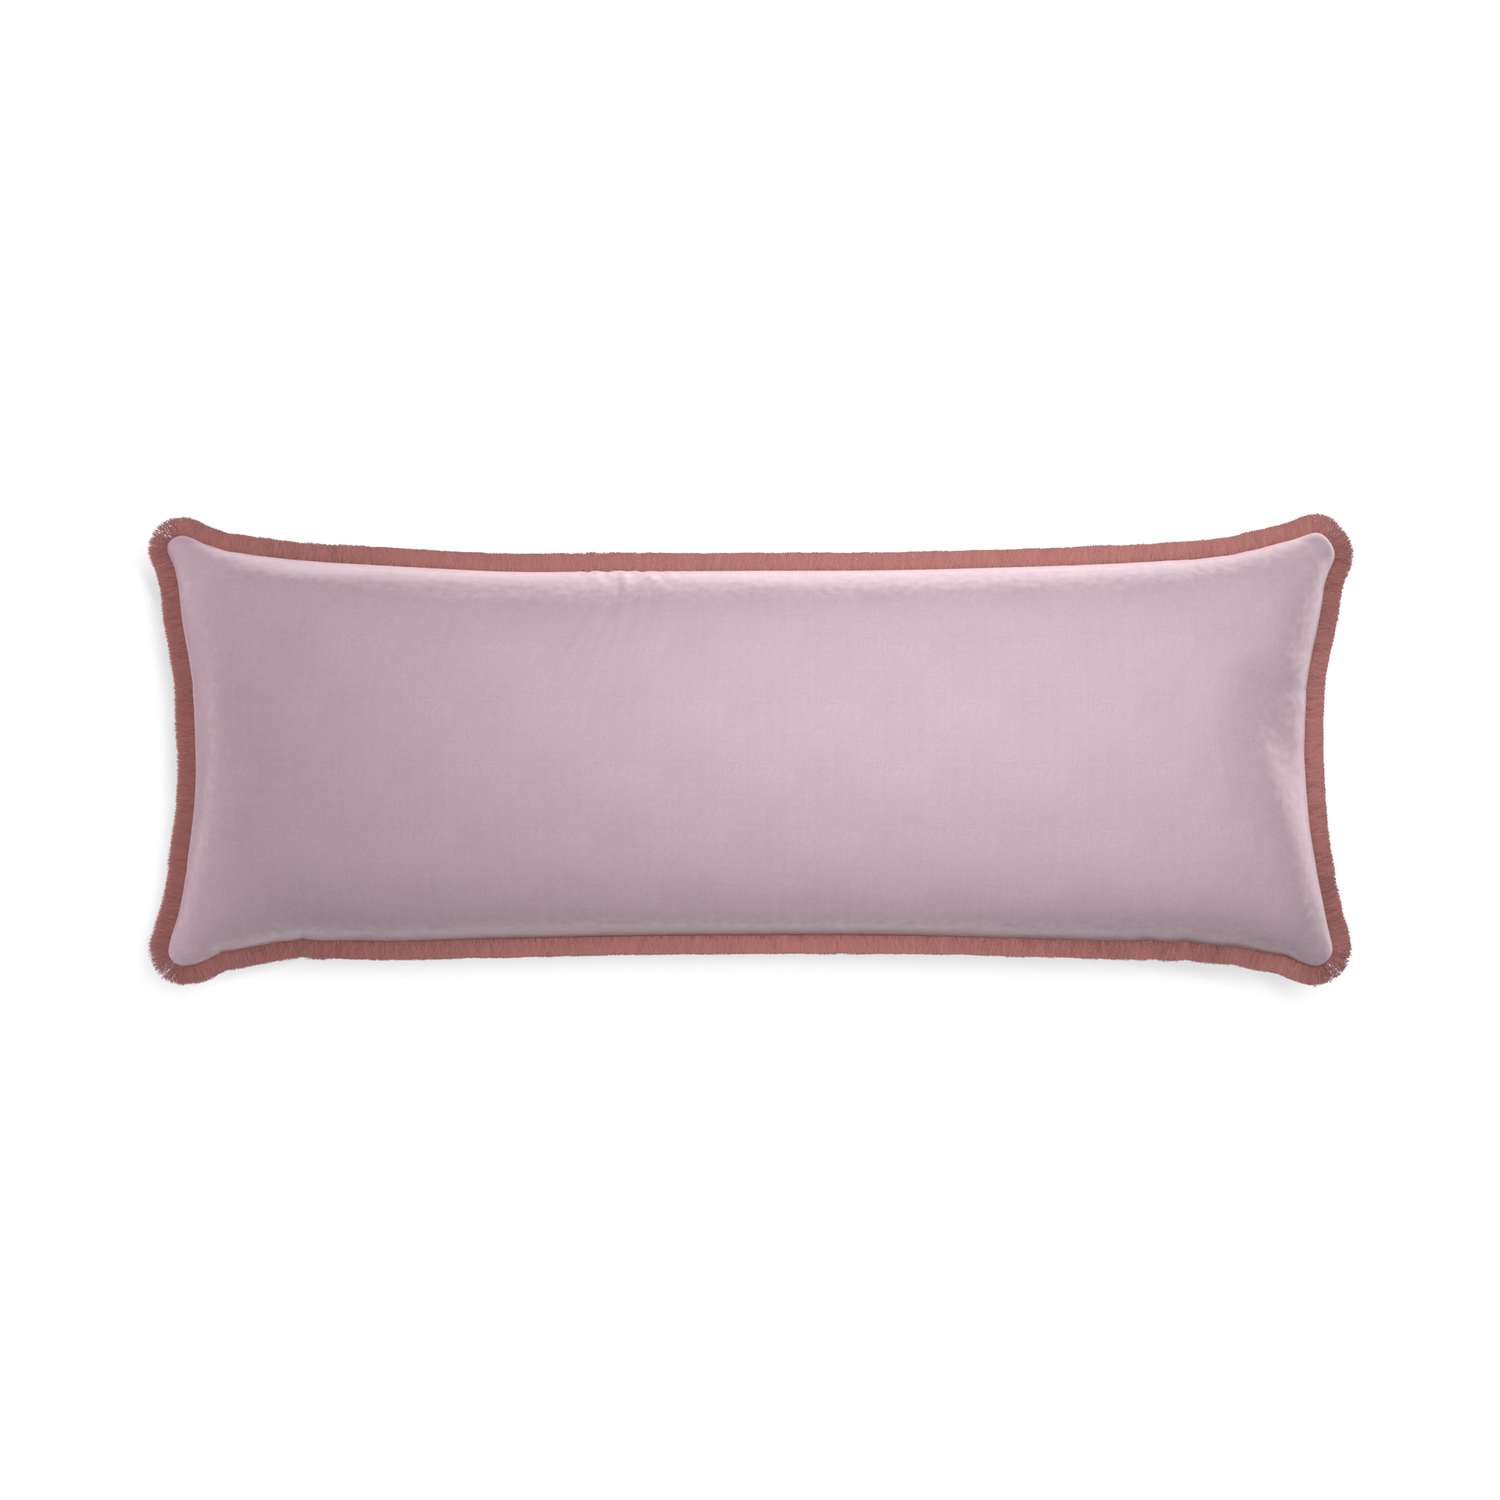 Xl-lumbar lilac velvet custom pillow with d fringe on white background